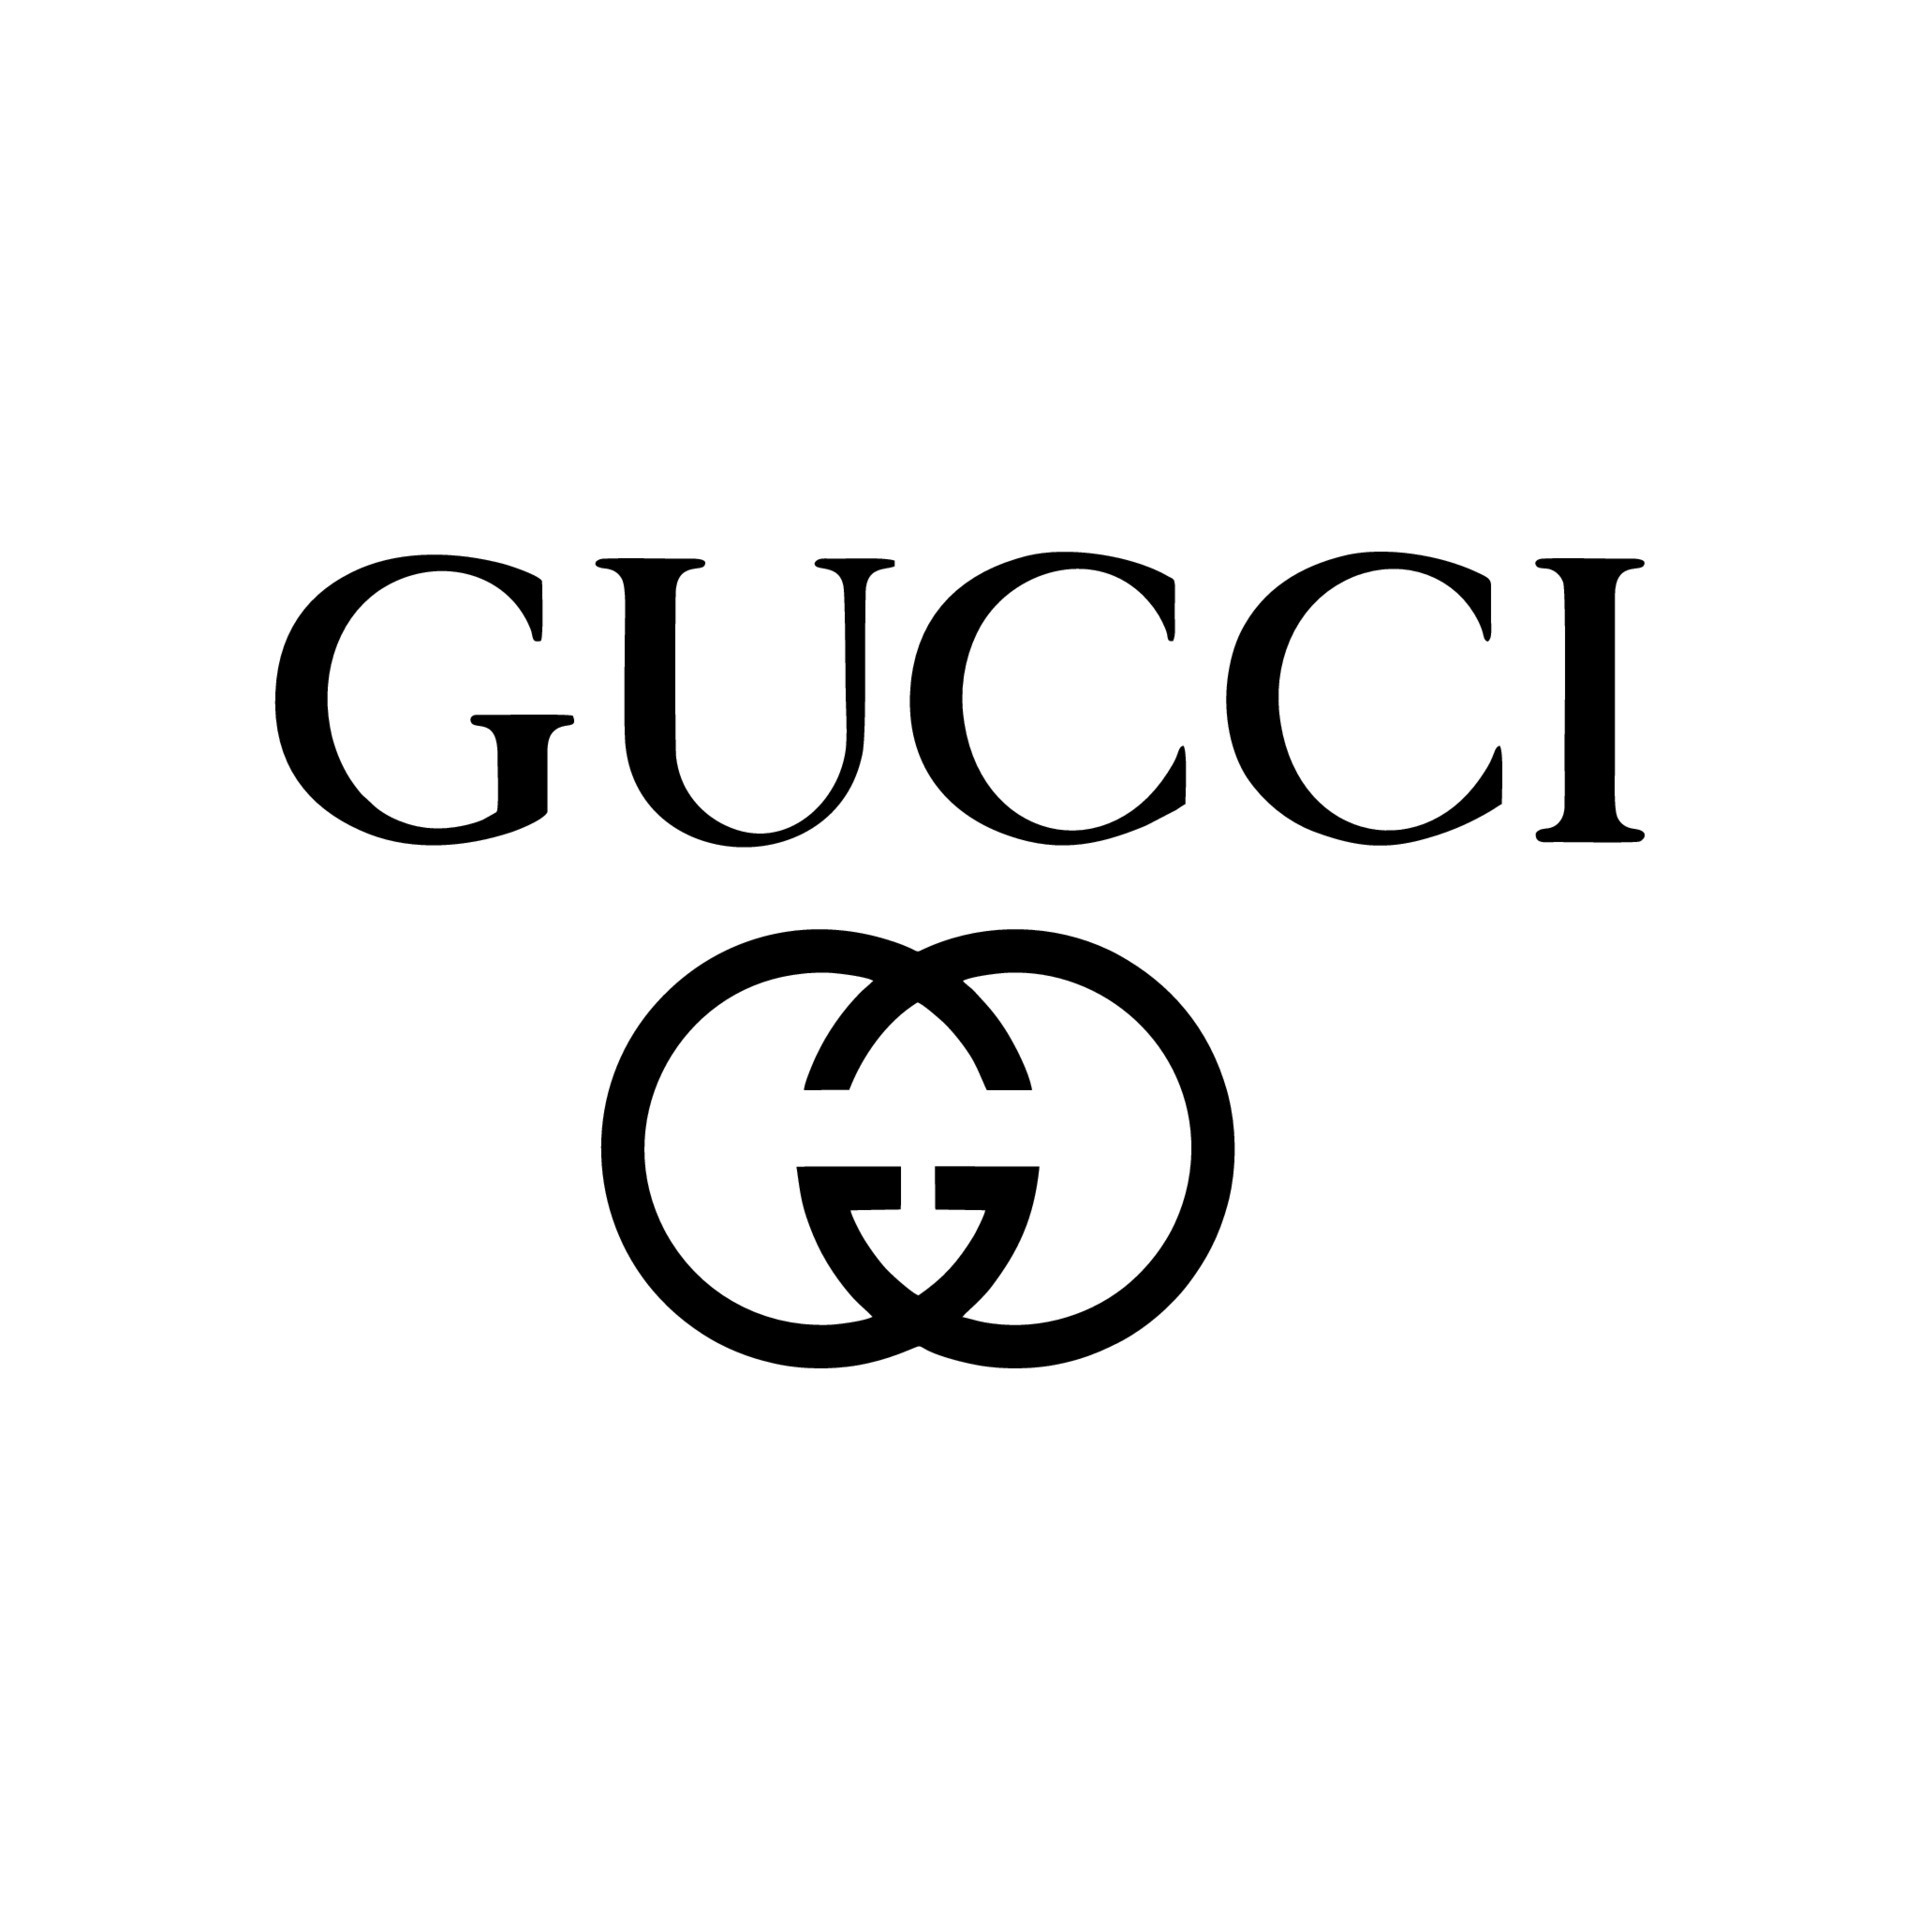 Gucci logo vector, Gucci icon free vector 20336465 Vector Art at Vecteezy